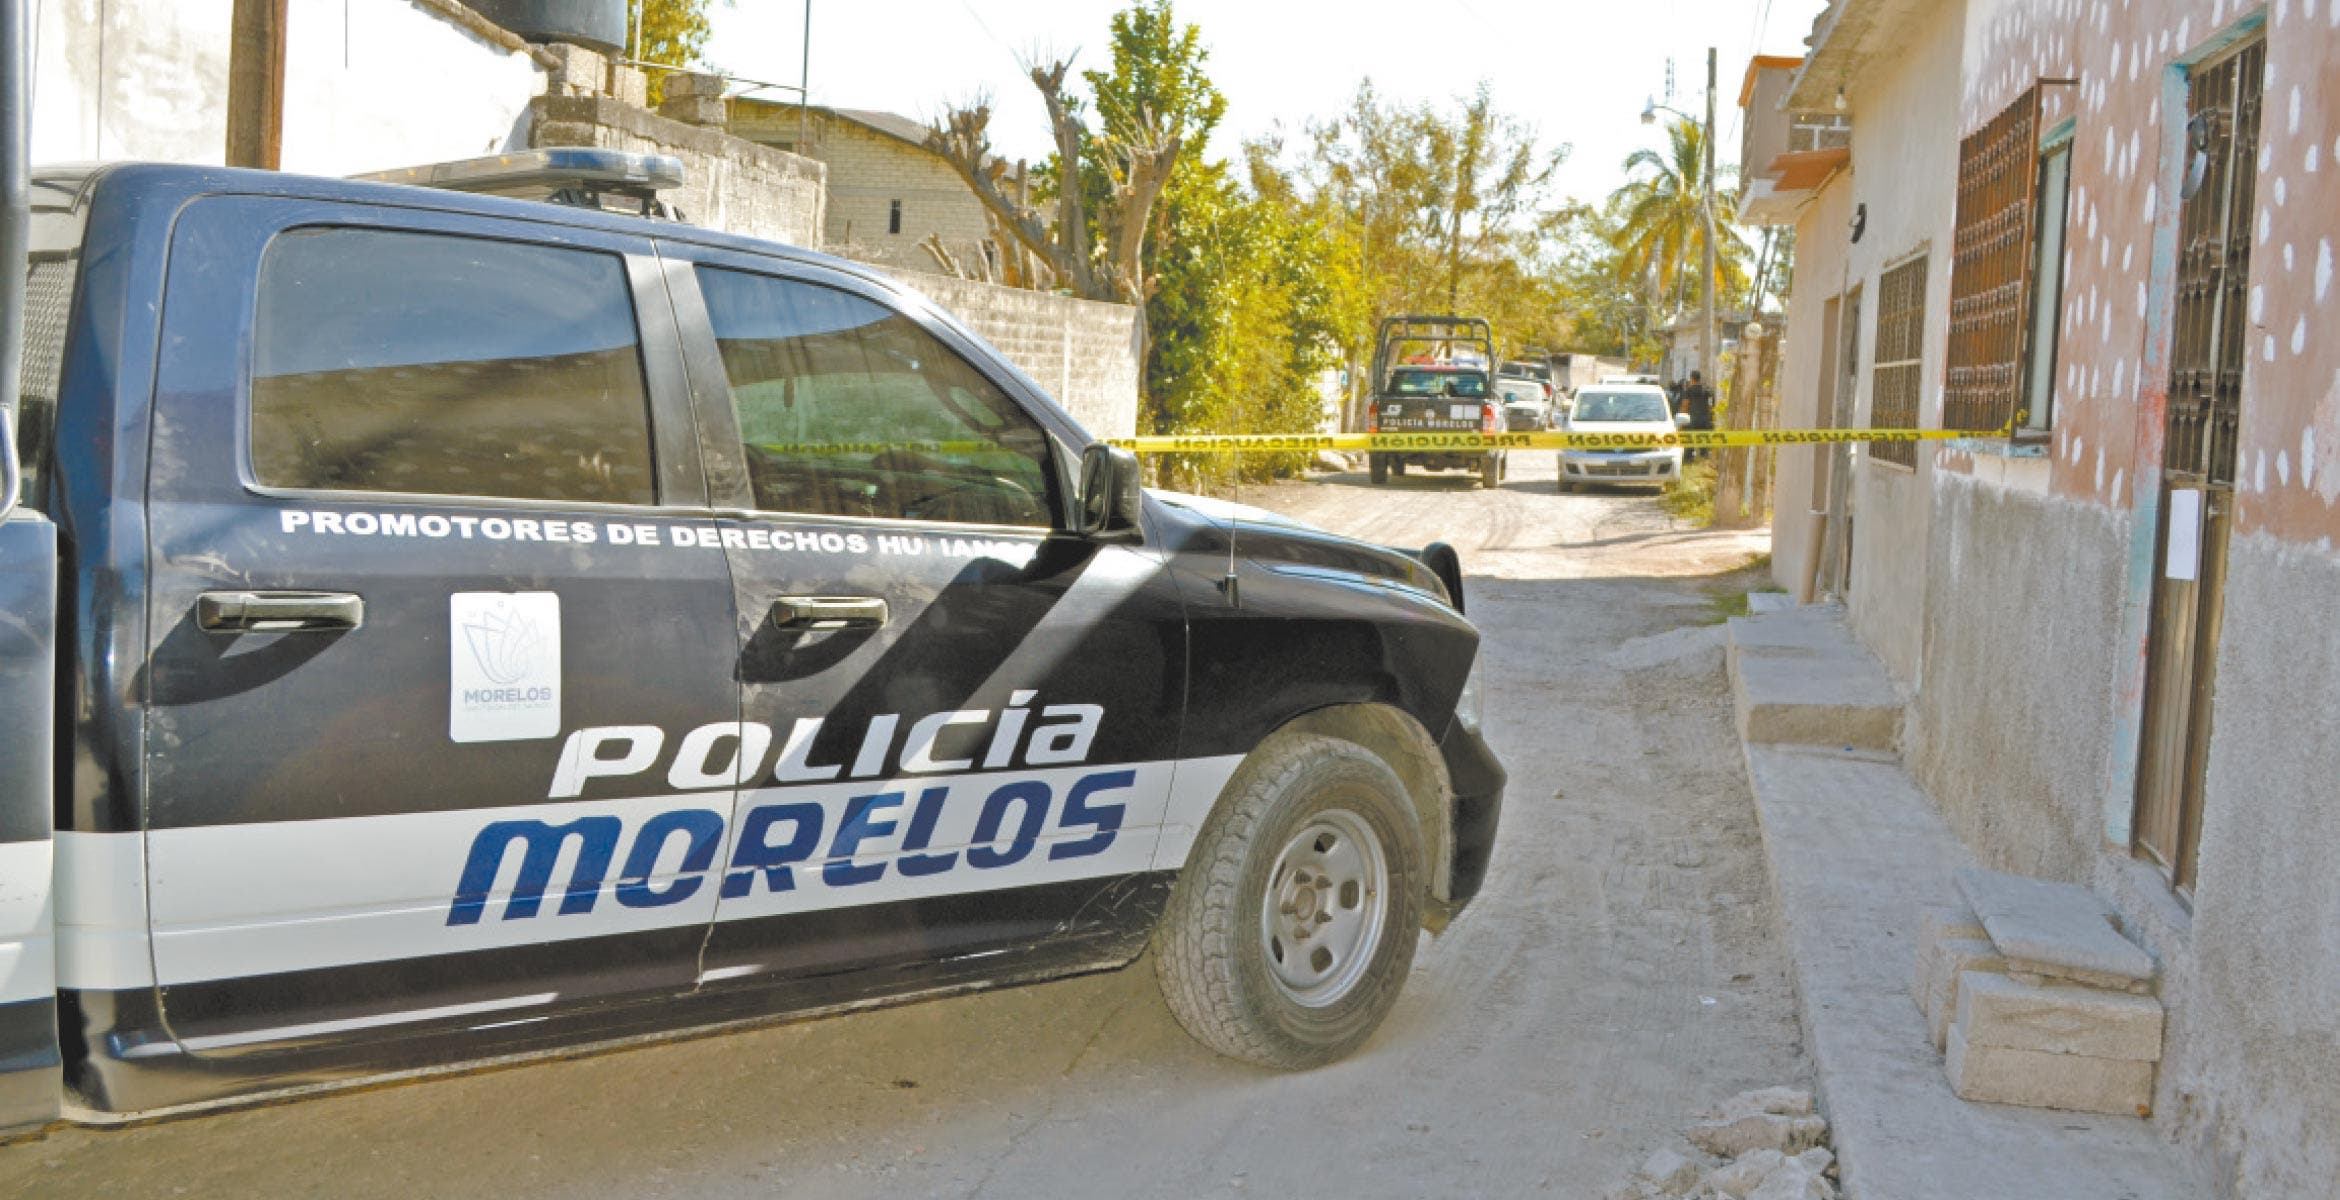 Ejecutan en Morelos a una pareja en un domicilio | Noticias | Diario de